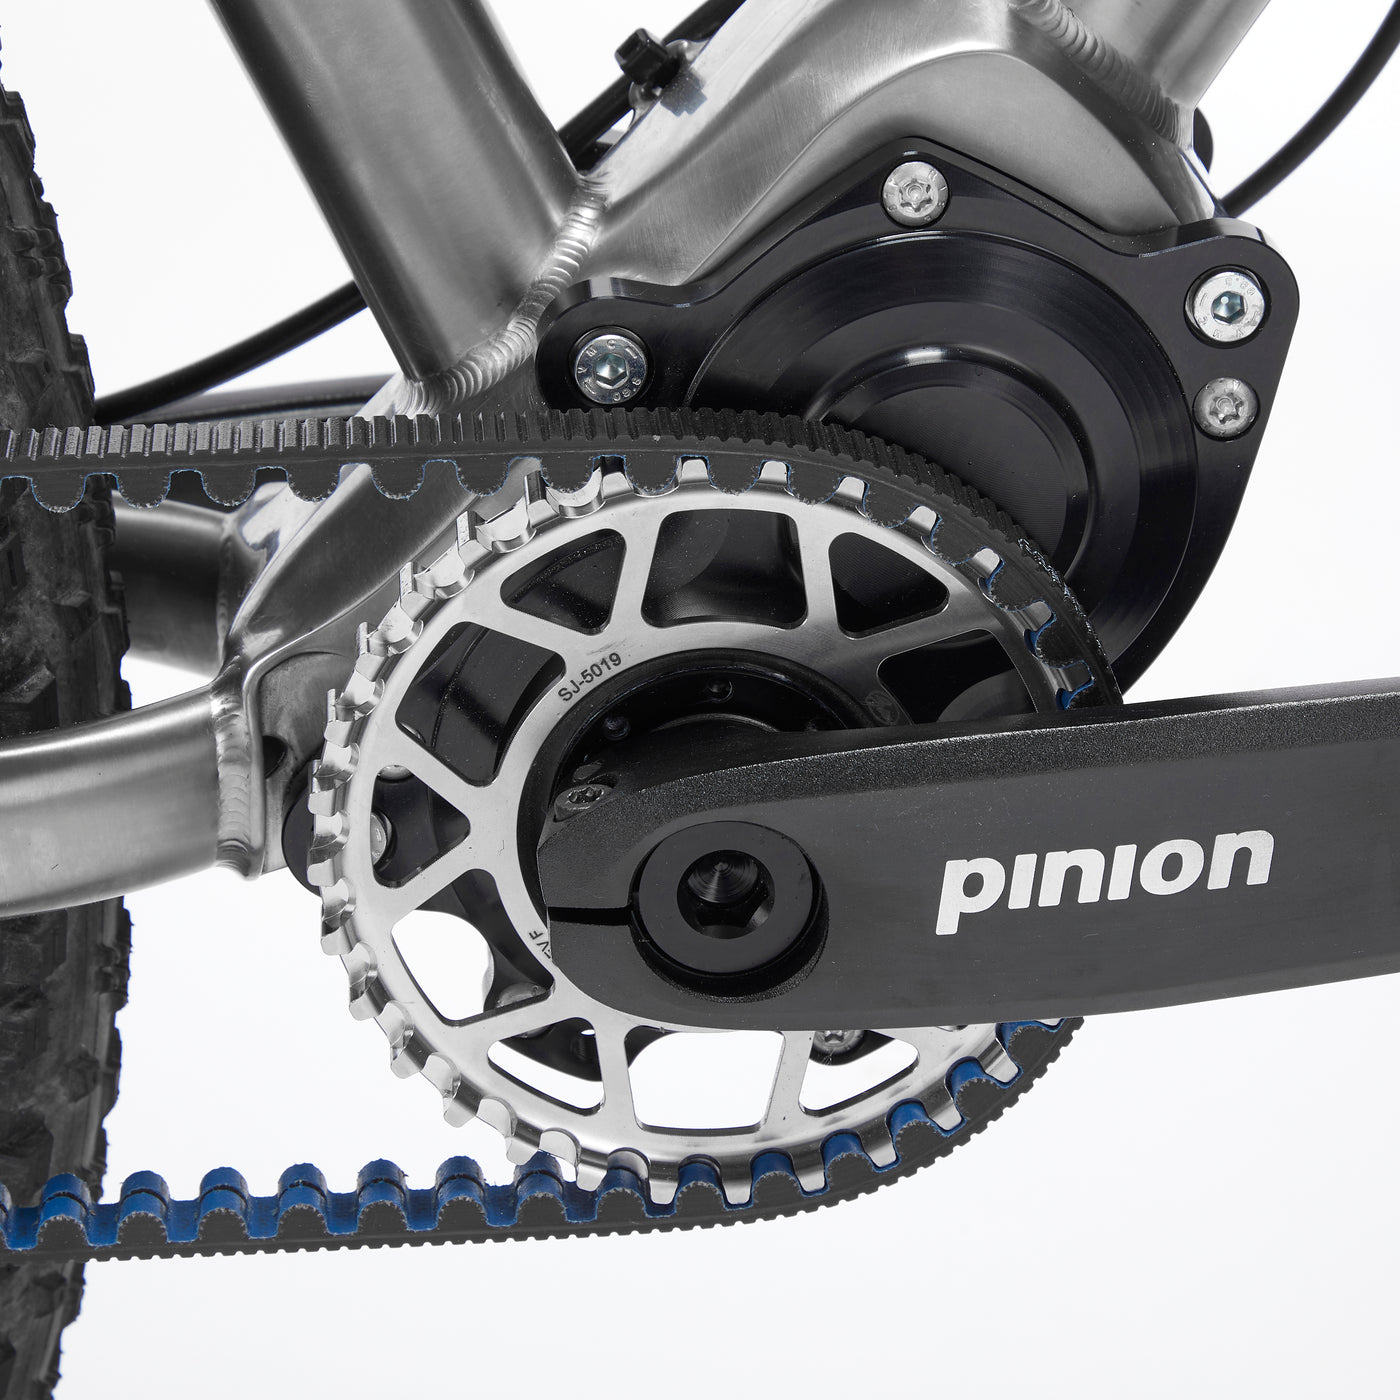 Titanium Pinion Gearbox Bikes